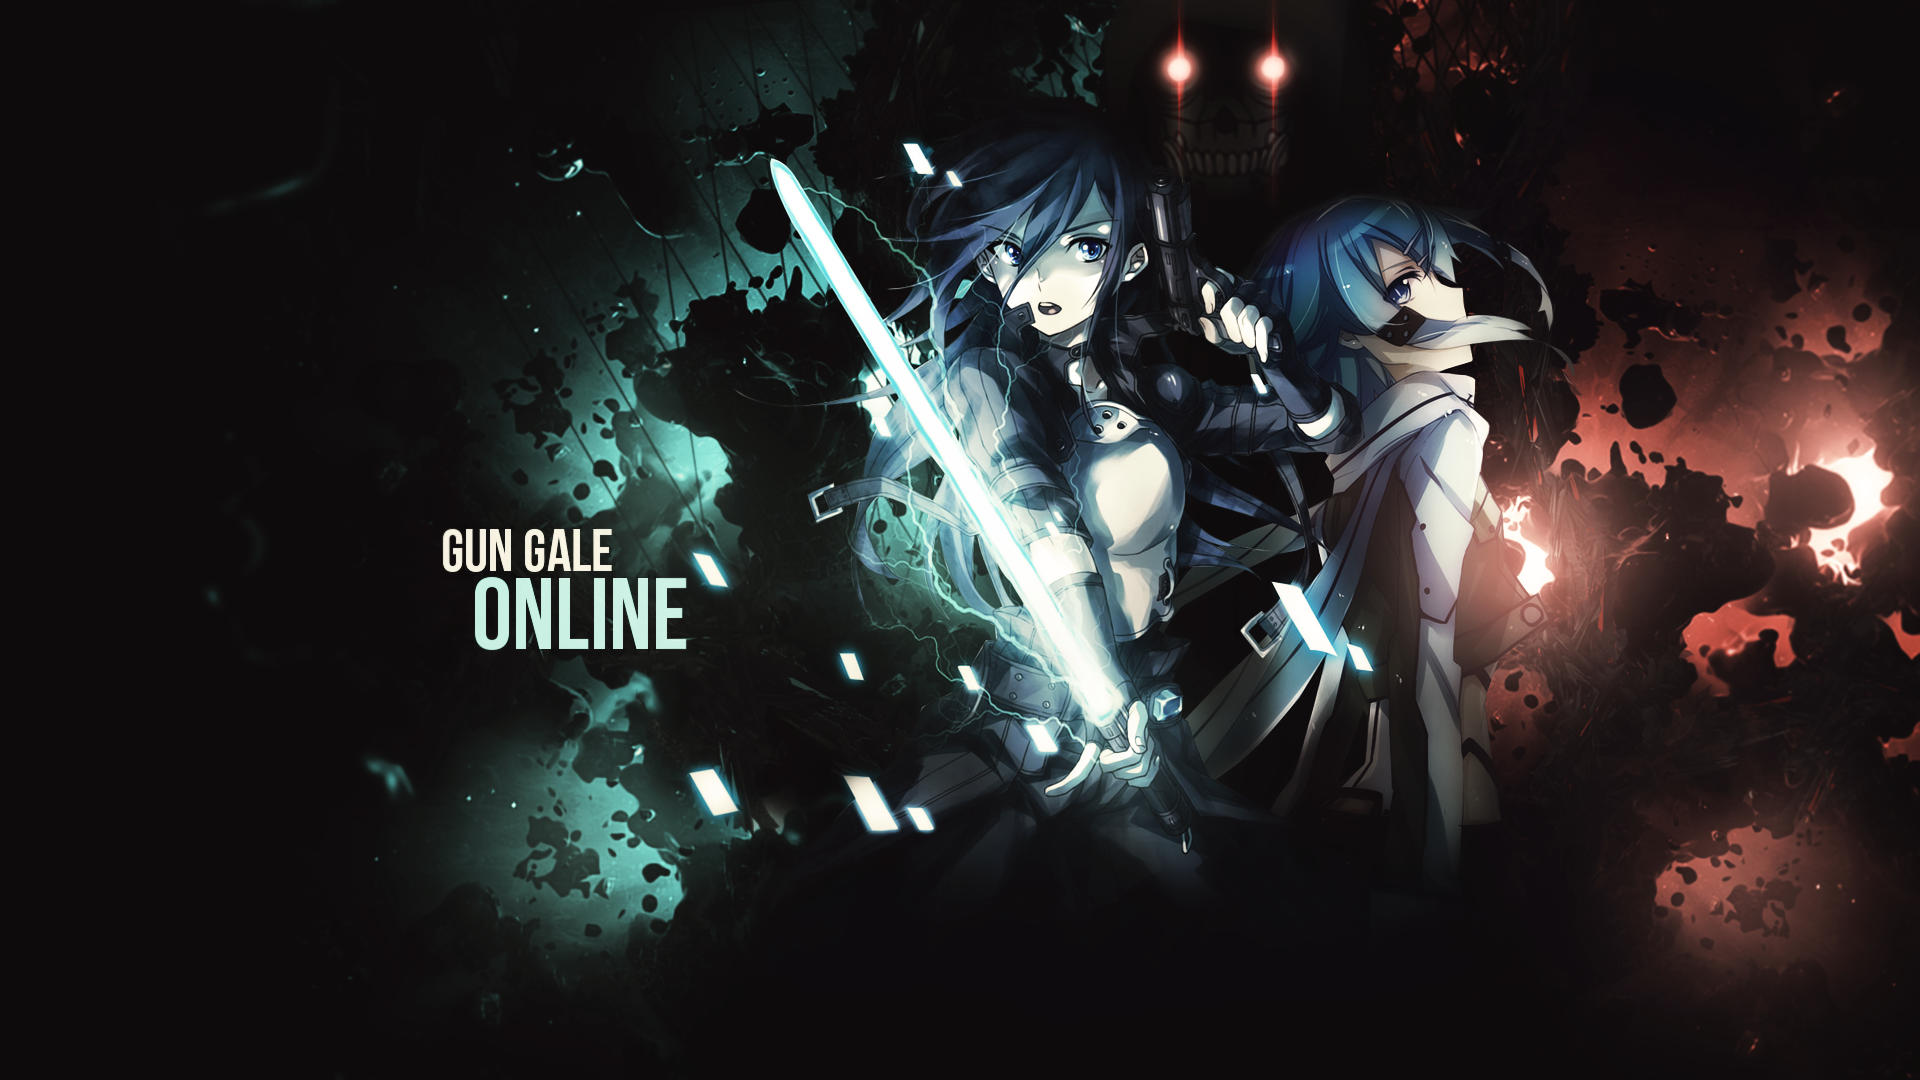 Download Death Gun (Sword Art Online) Sinon (Sword Art Online) Kirito (Sword Art Online) Anime Sword Art Online II  HD Wallpaper